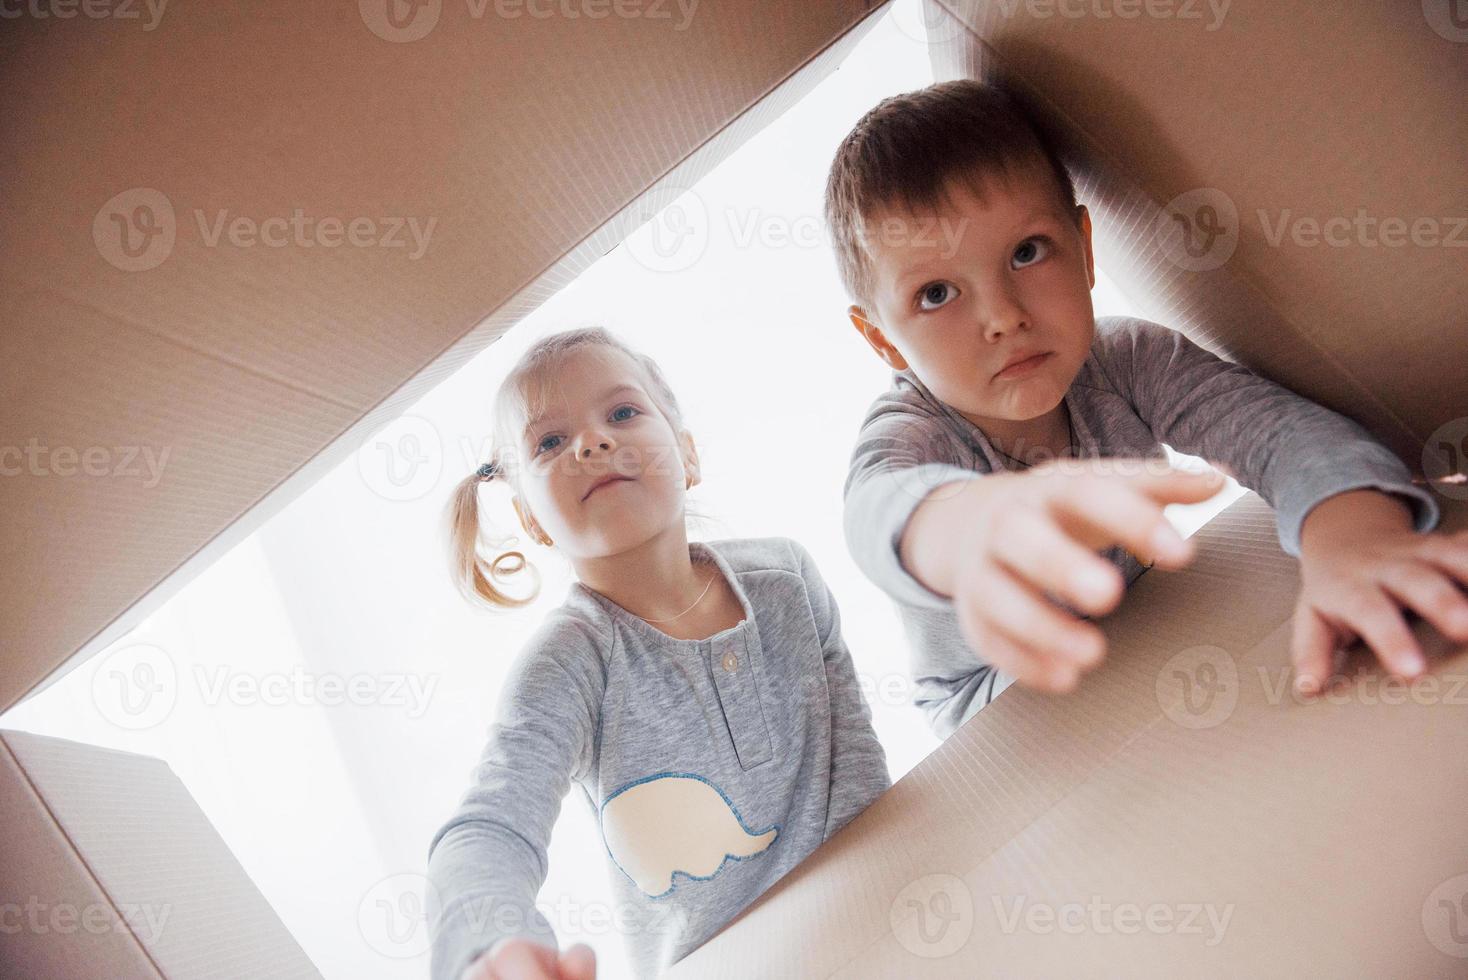 två små pojkar och flickor som öppnar kartong och tittar inuti med förvåning foto